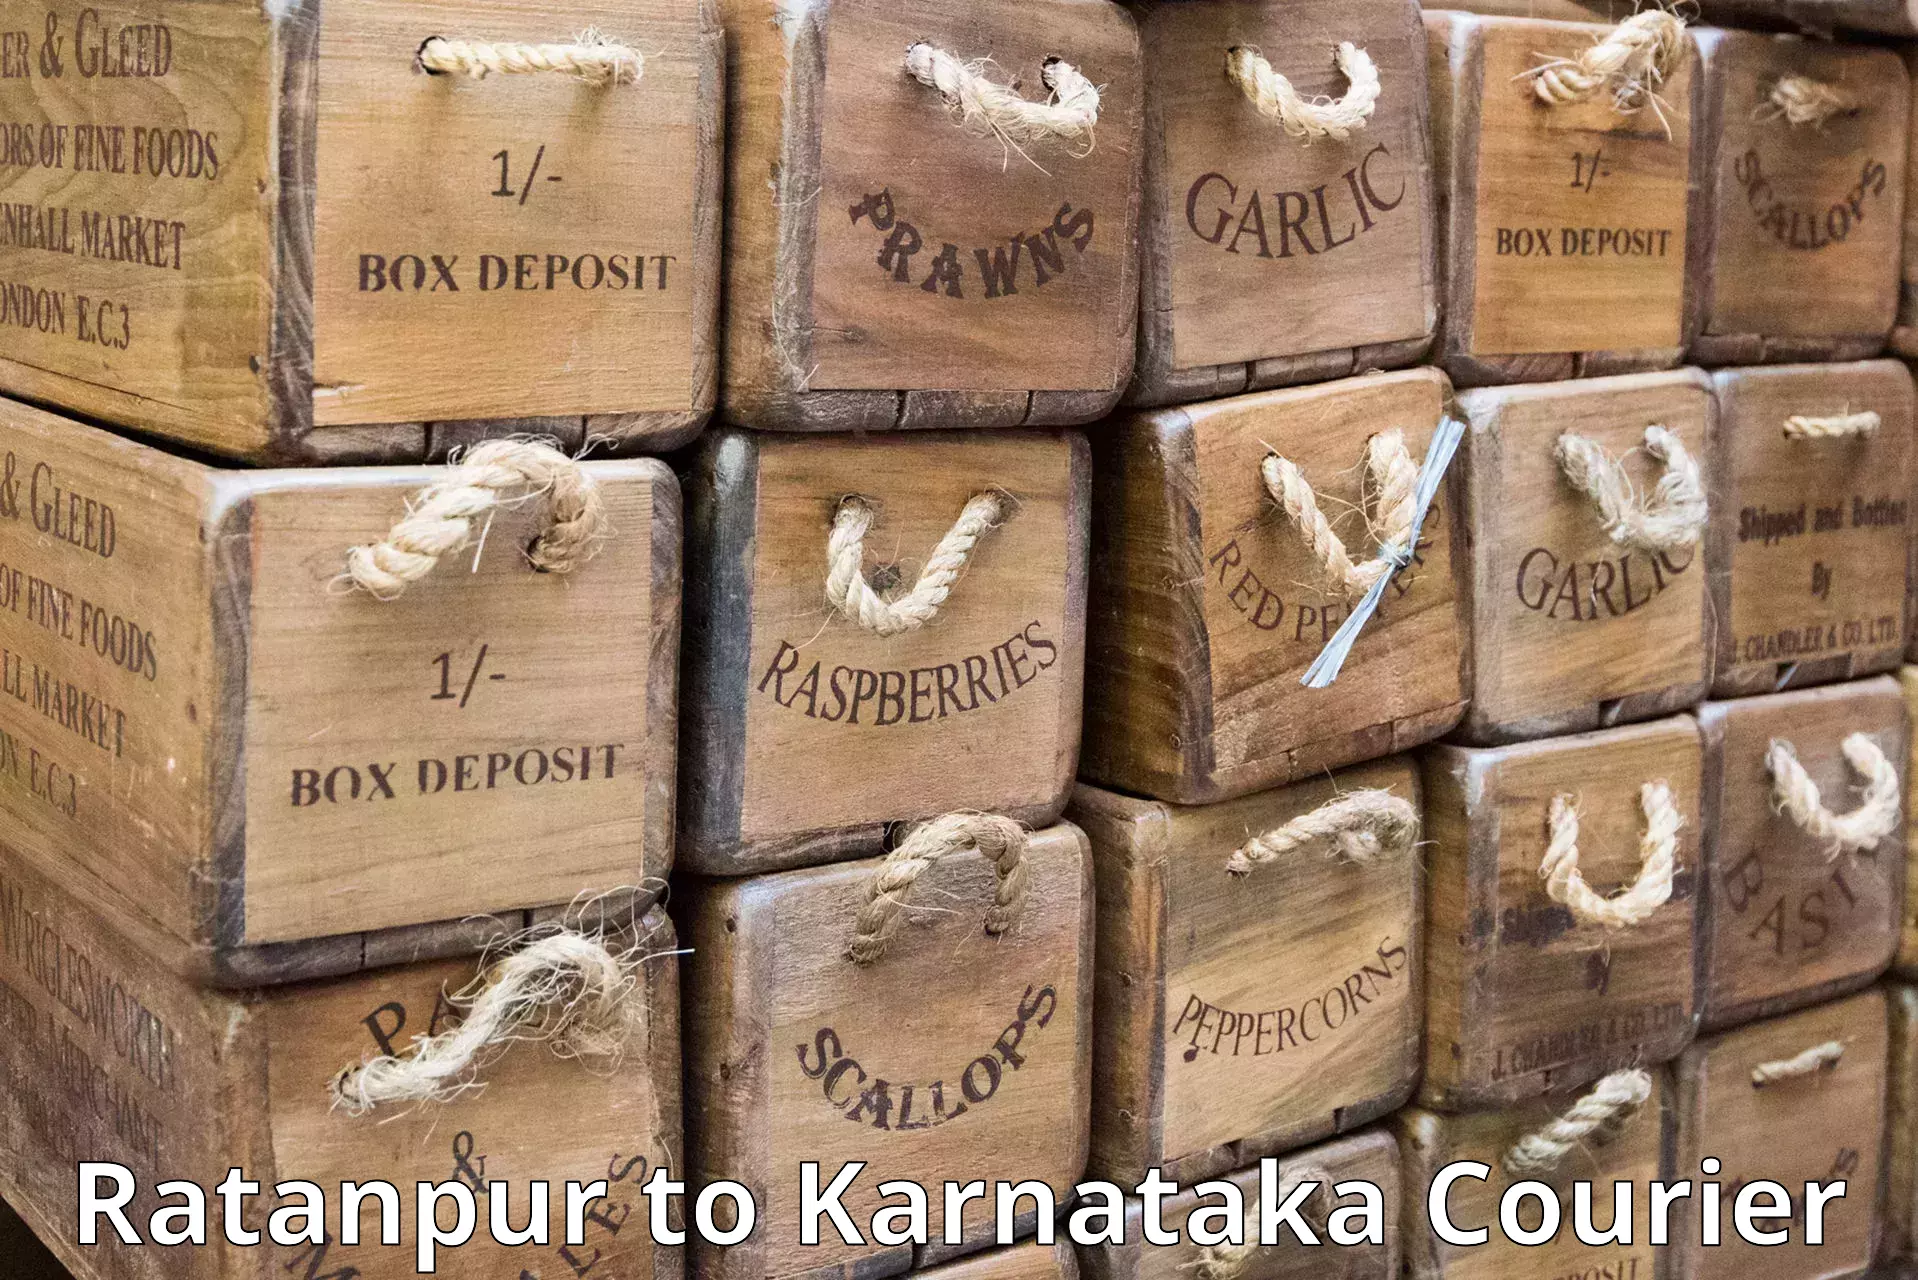 Courier service comparison Ratanpur to Kalasa